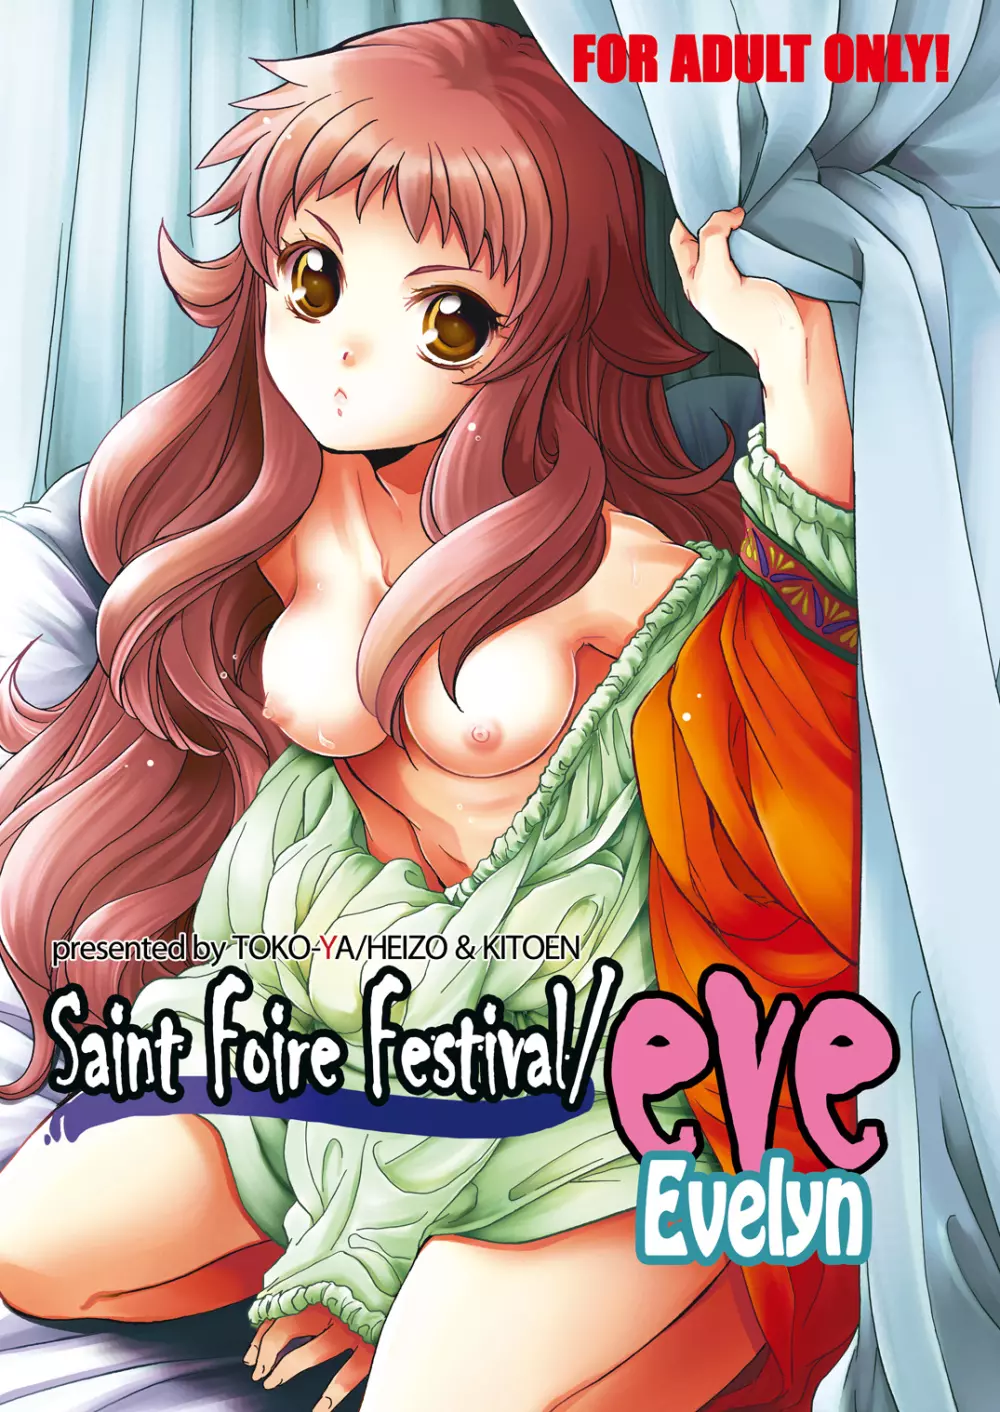 Saint Foire Festival／eve Evelyn